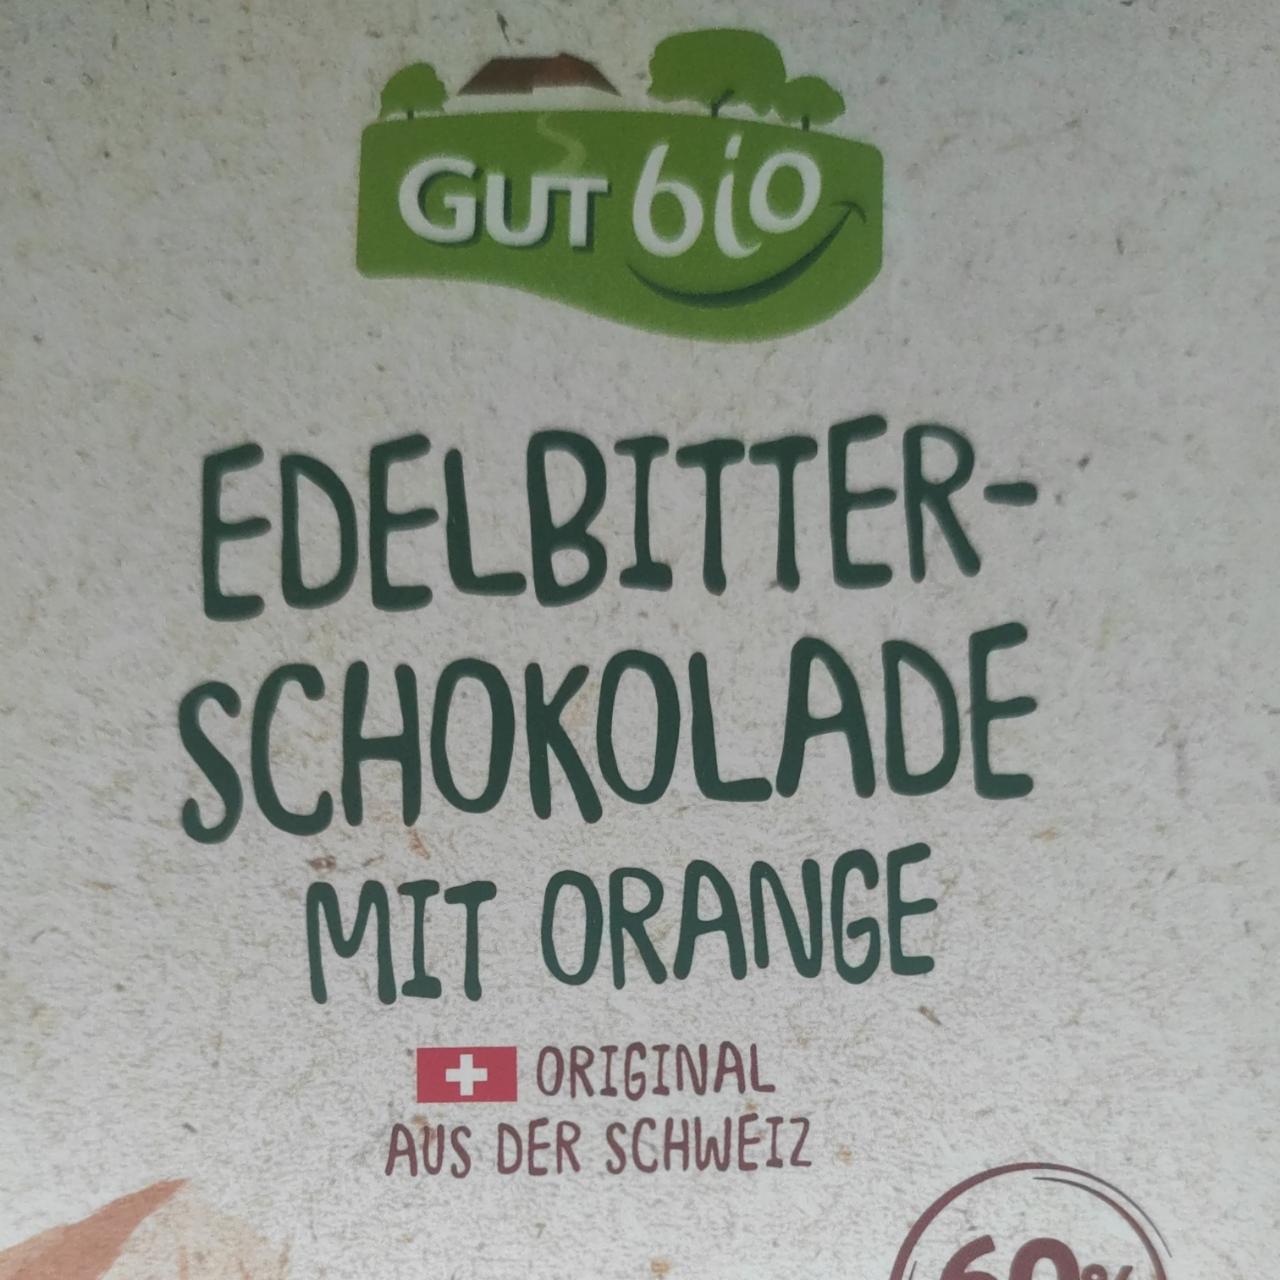 Fotografie - Edelbitterschokolade mit orange GutBio